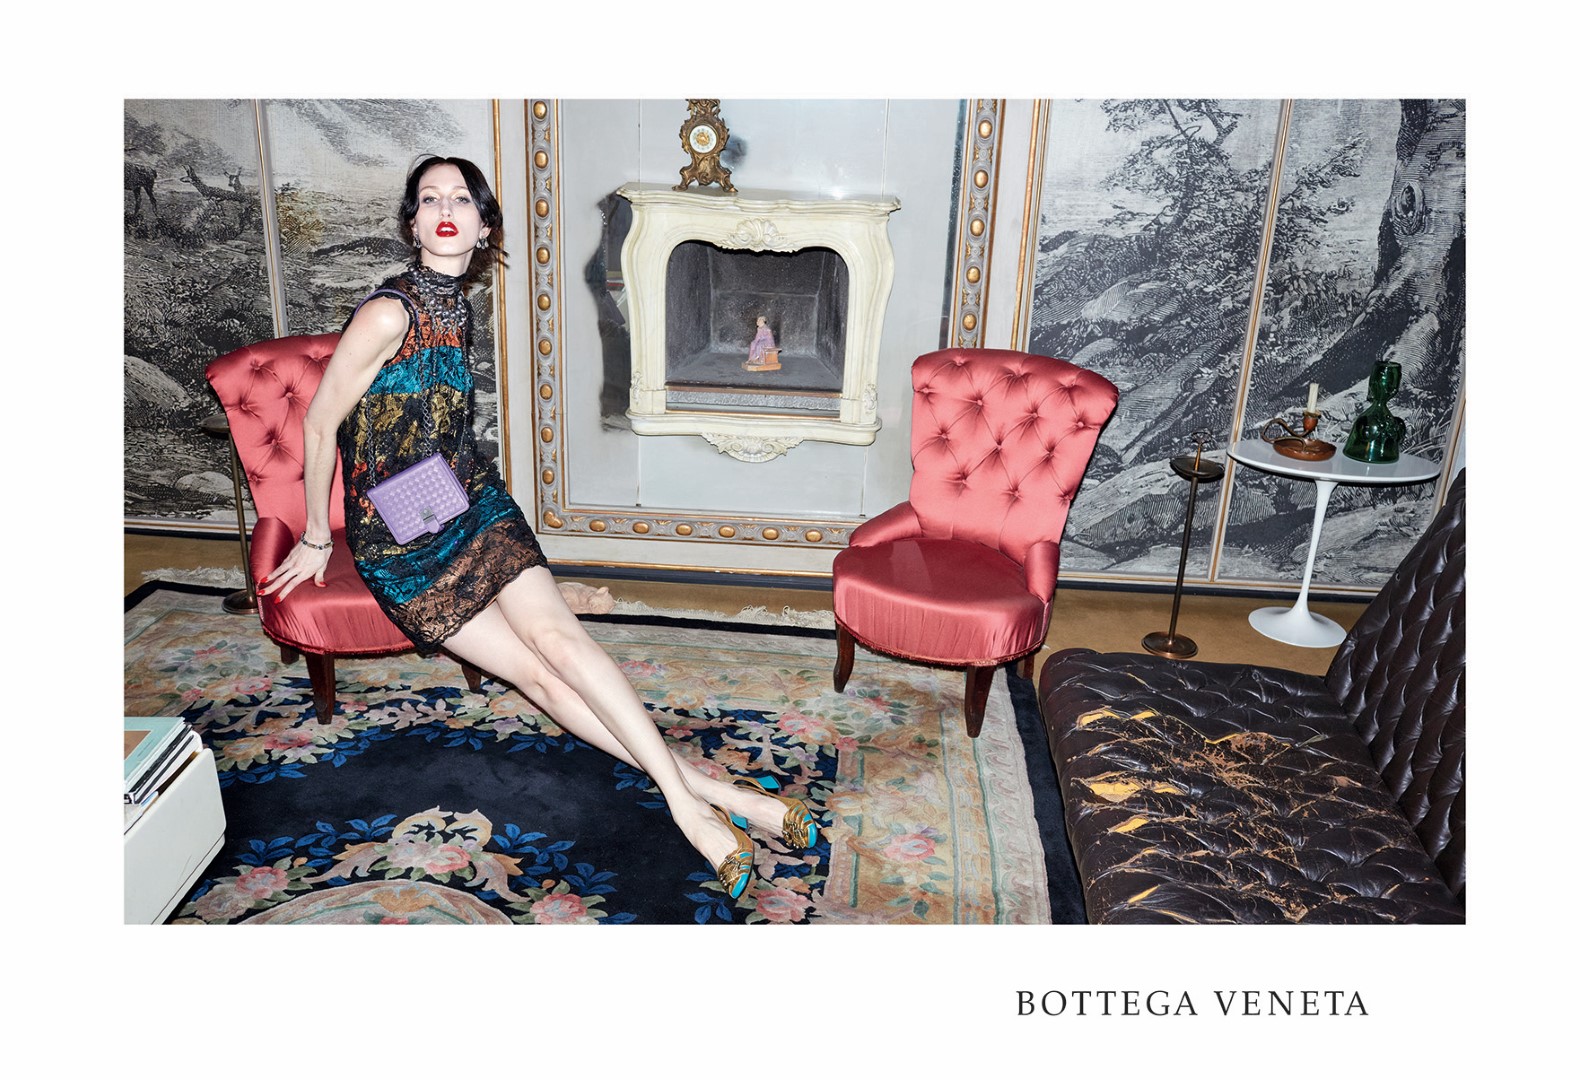 Bottega Veneta campagna pubblicitaria autunno inverno 2015 2016: gli scatti di Juergen Teller